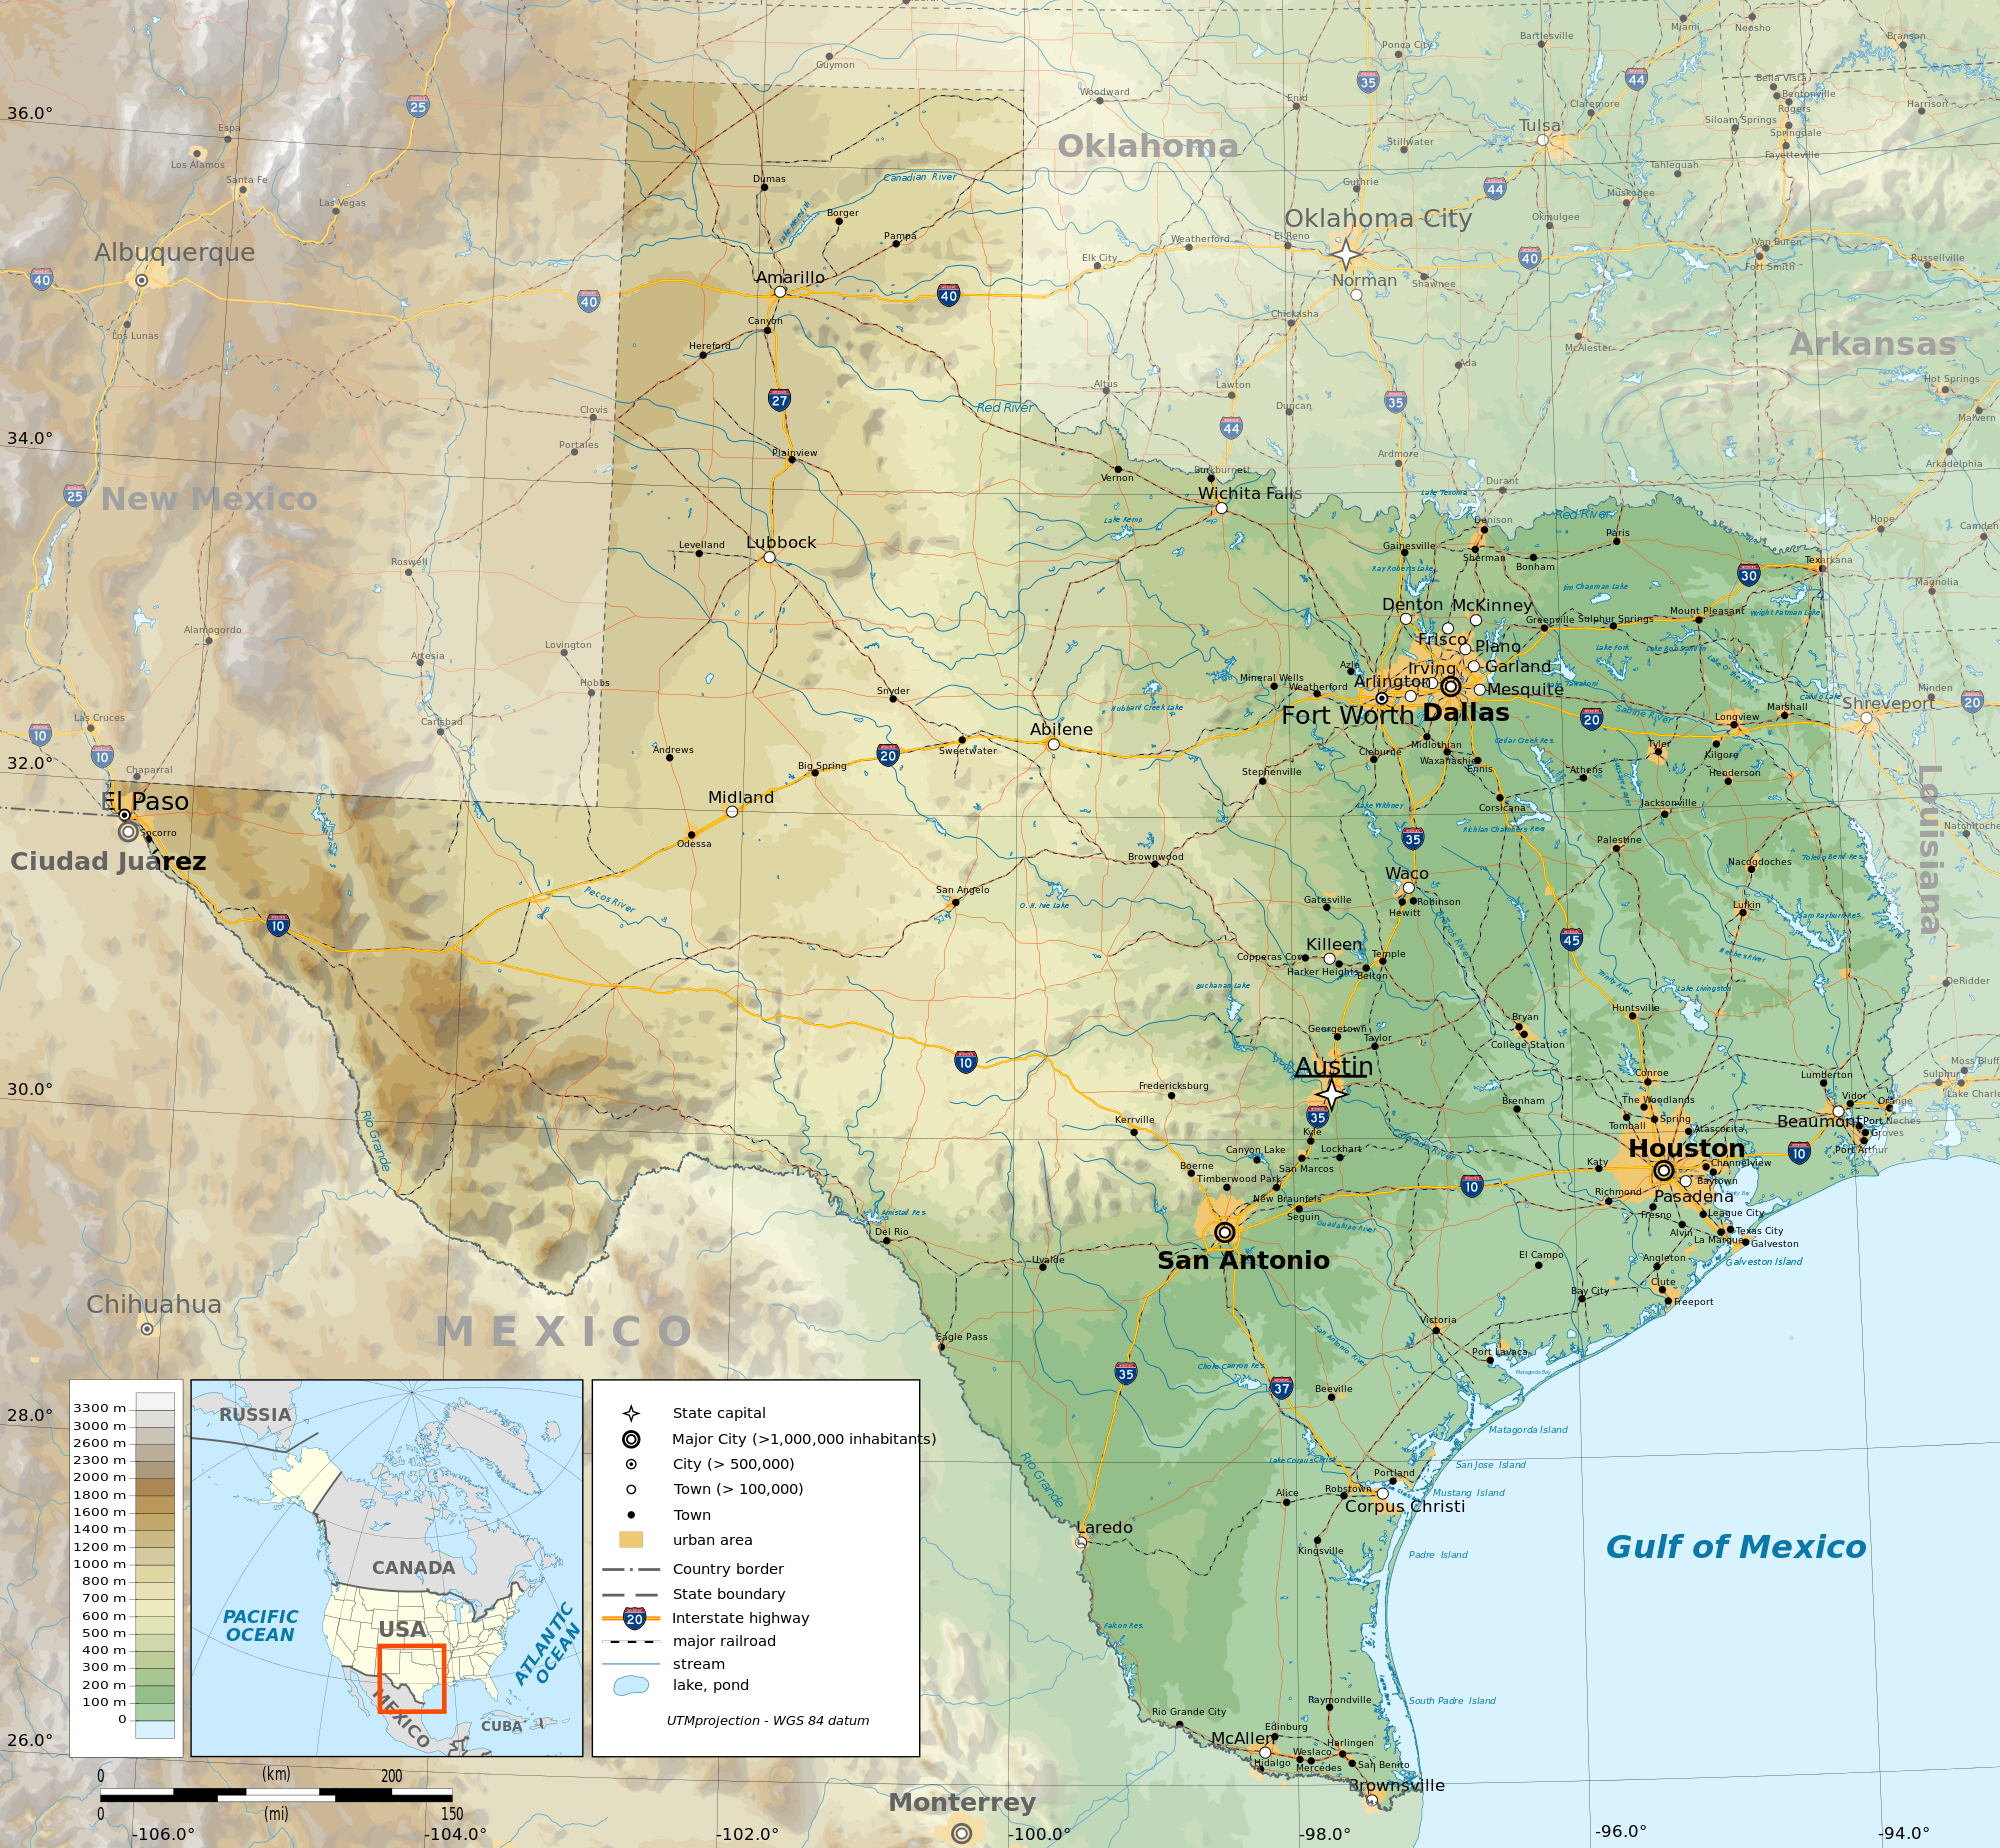 Texas Topo Map | Business Ideas 2013 - Texas Topo Map